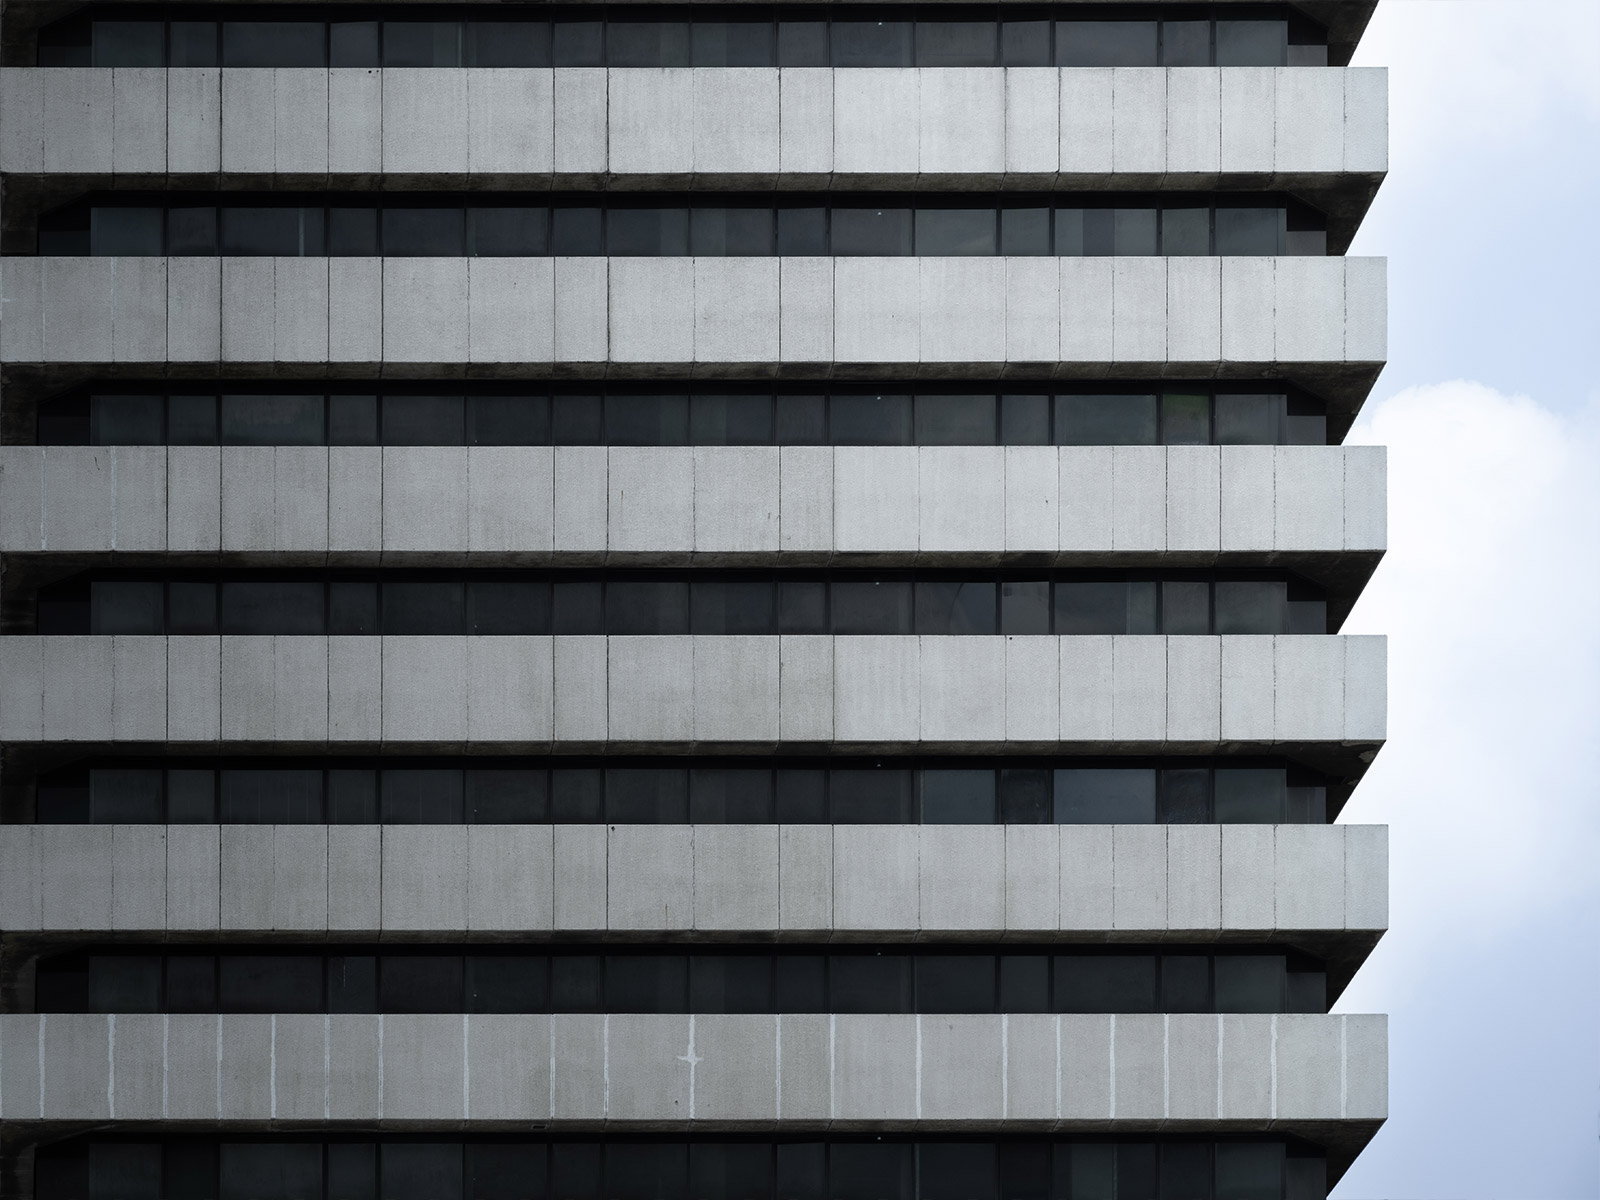 อาคารเซ็นทรัล ชิดลม (Central Chidlom) วัสดุ: คอนกรีตและกระจก (Concrete & Glass)